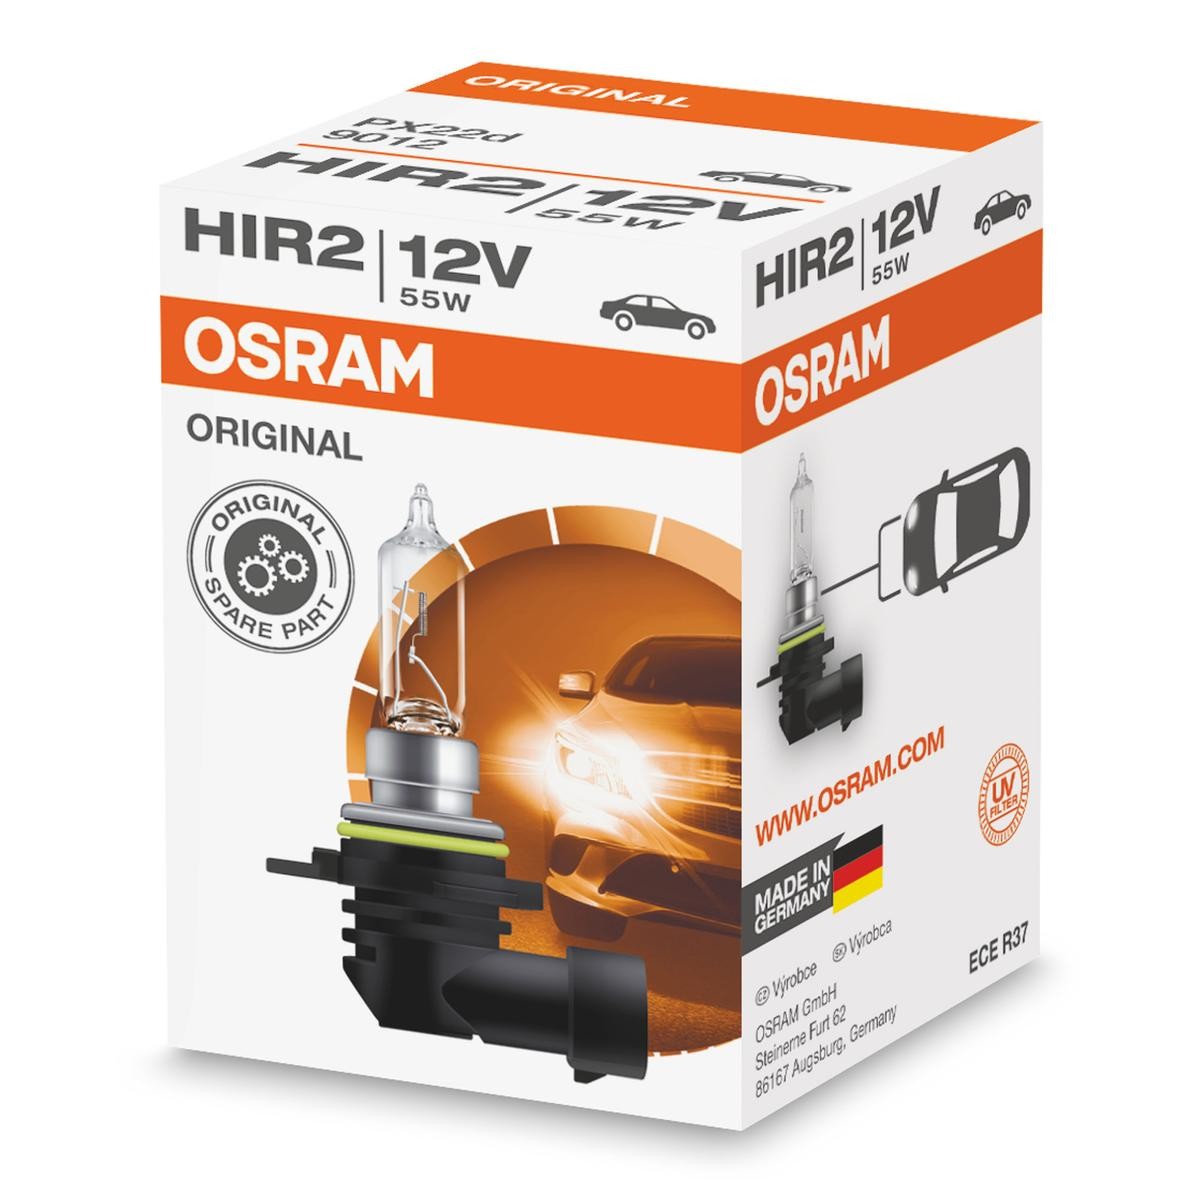 Chevy ricambi di qualità originale 
HIR2 OSRAM 9012